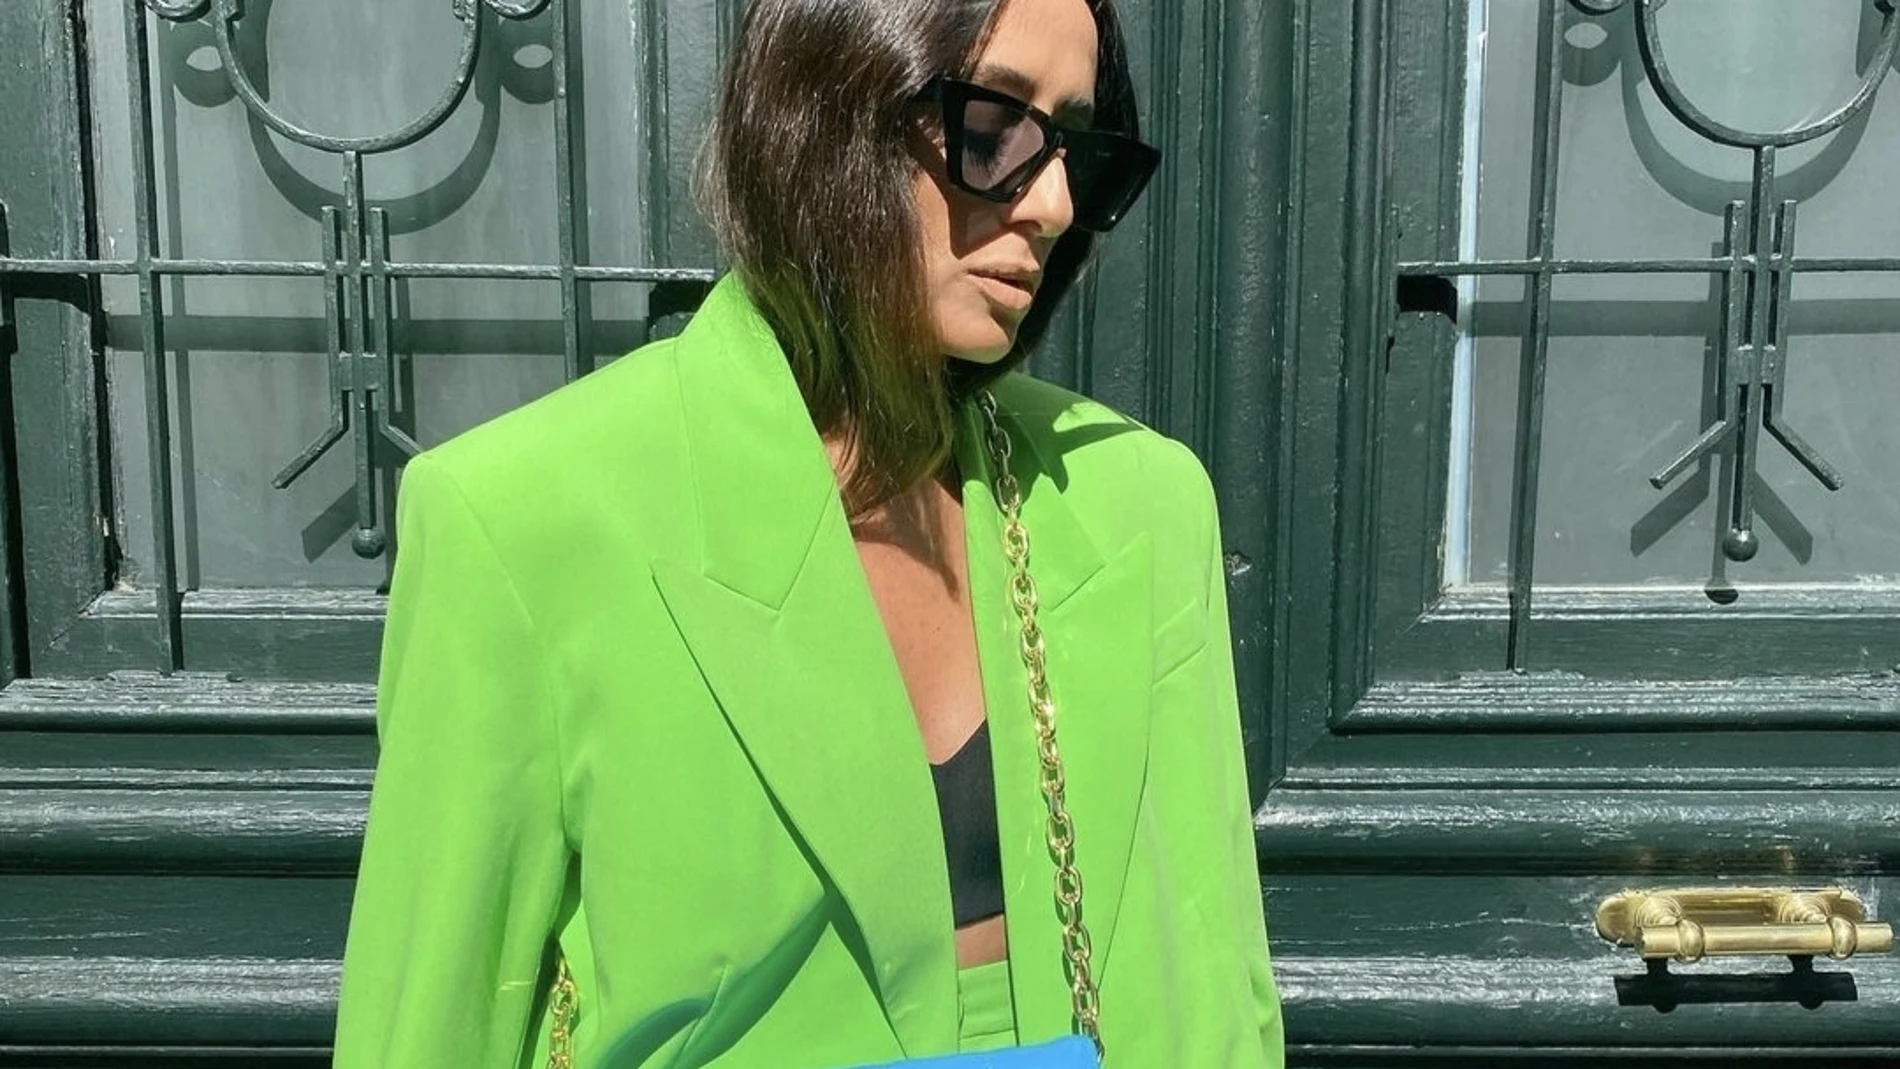 Laura Eguizabal con look que combina verdes y azules/ Instagram @laura_eguizabal